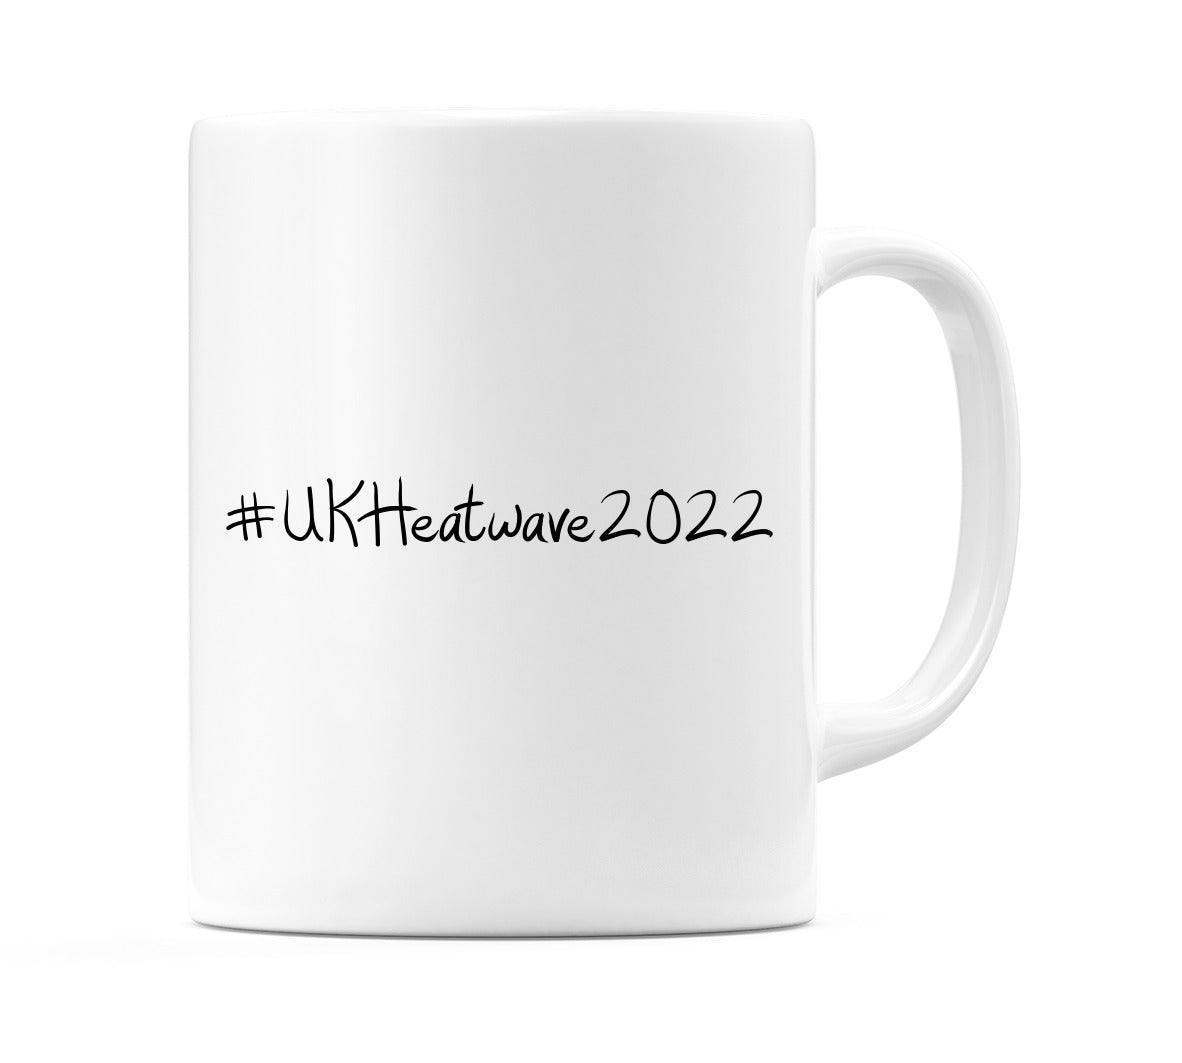 #UKHeatwave2022 Mug